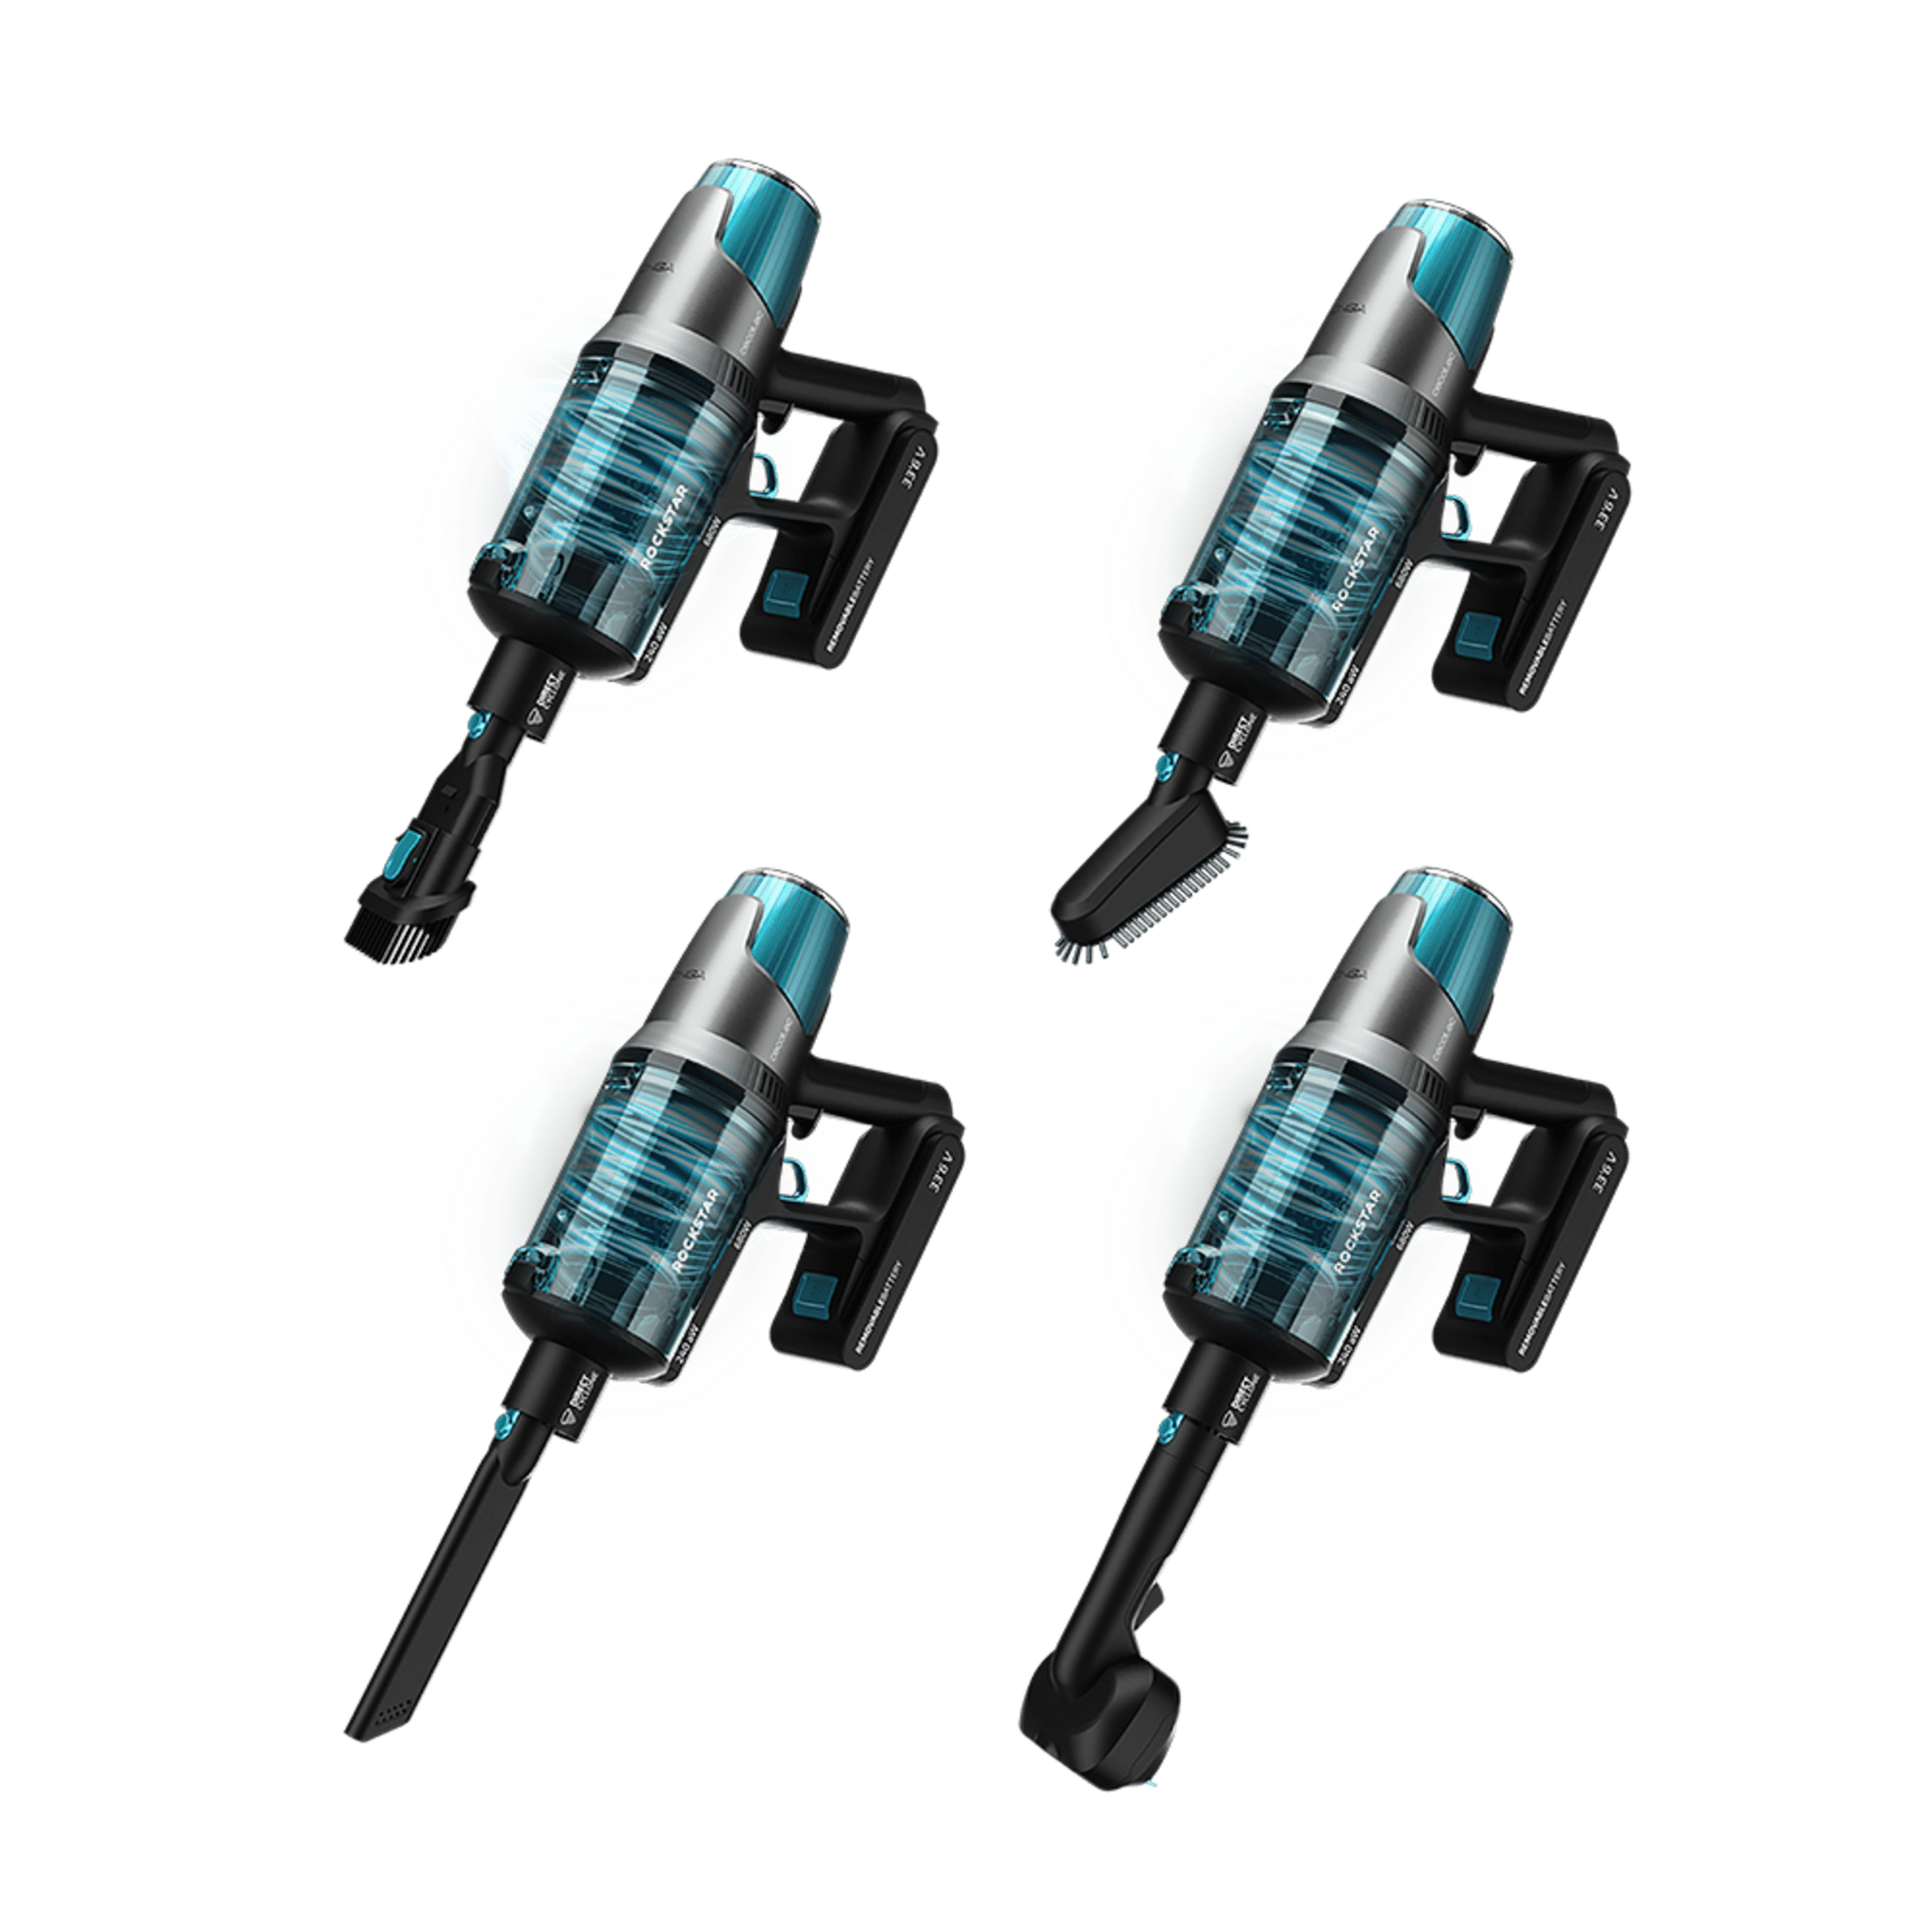 Aspirador vertical Cecotec Conga Rockstar 7500 Astral Jaliscazo Animal 680W  4 en 1 azul